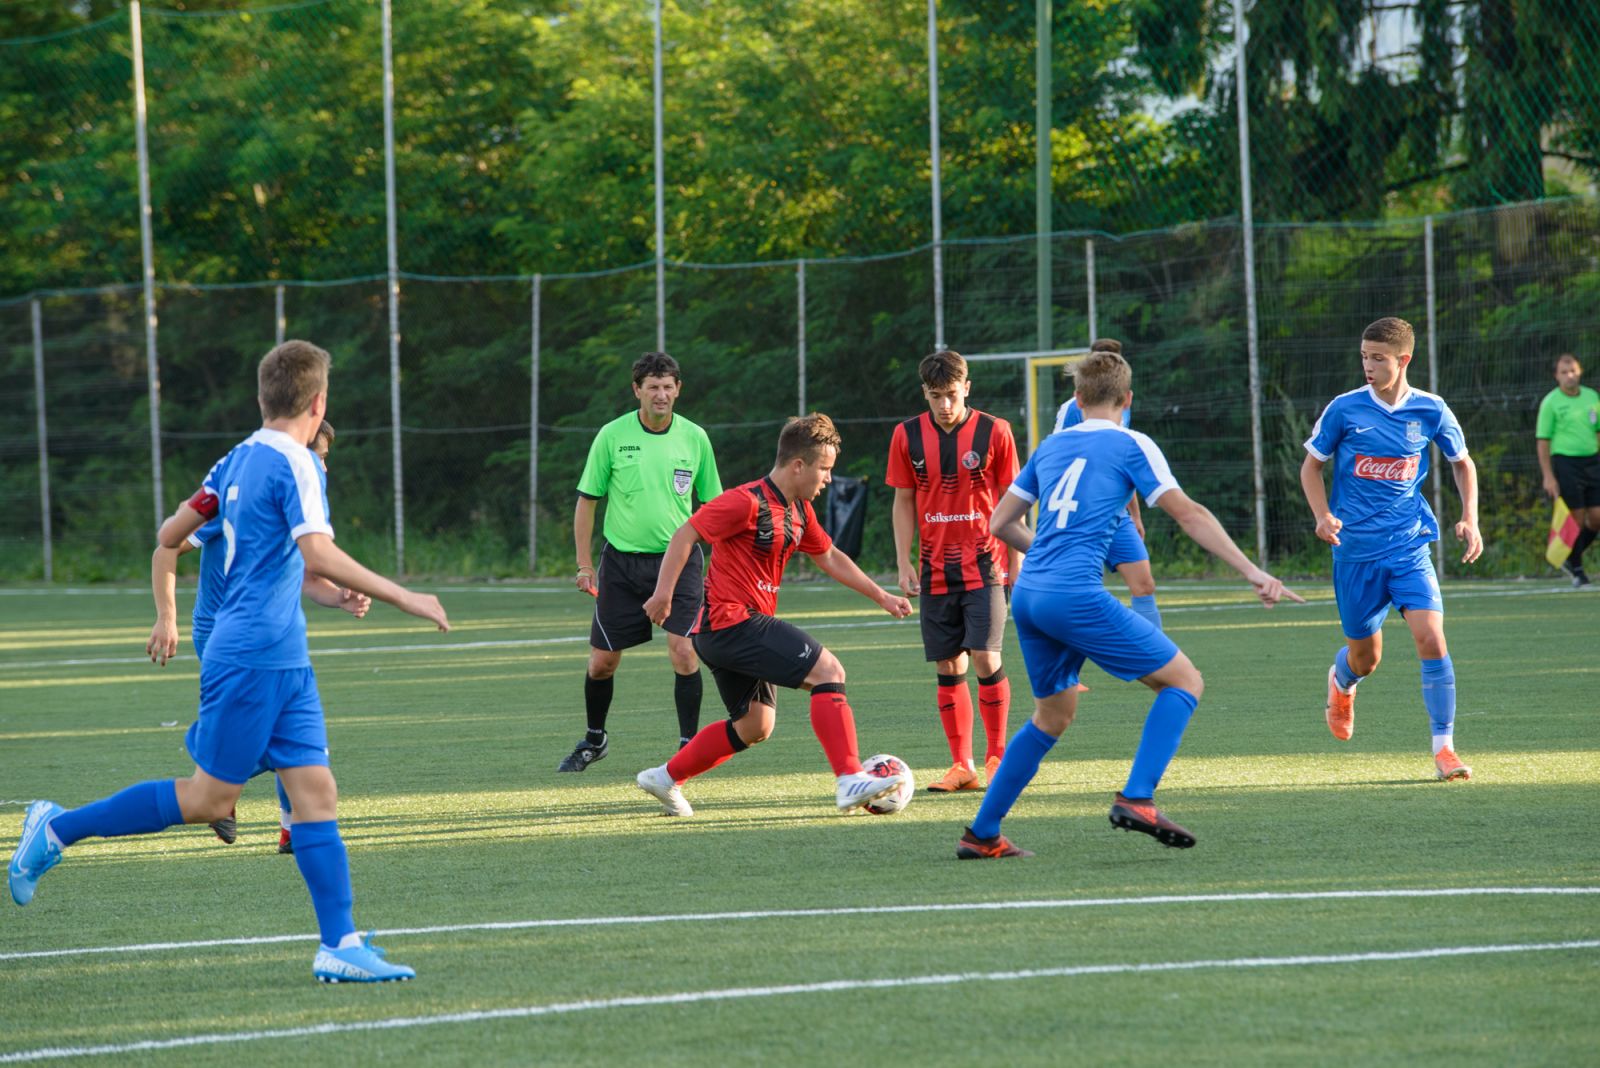 Folytatódtak az OTP Bank Kupa küzdelmei – a hazai csapat szombaton az aranyéremért léphet pályára.